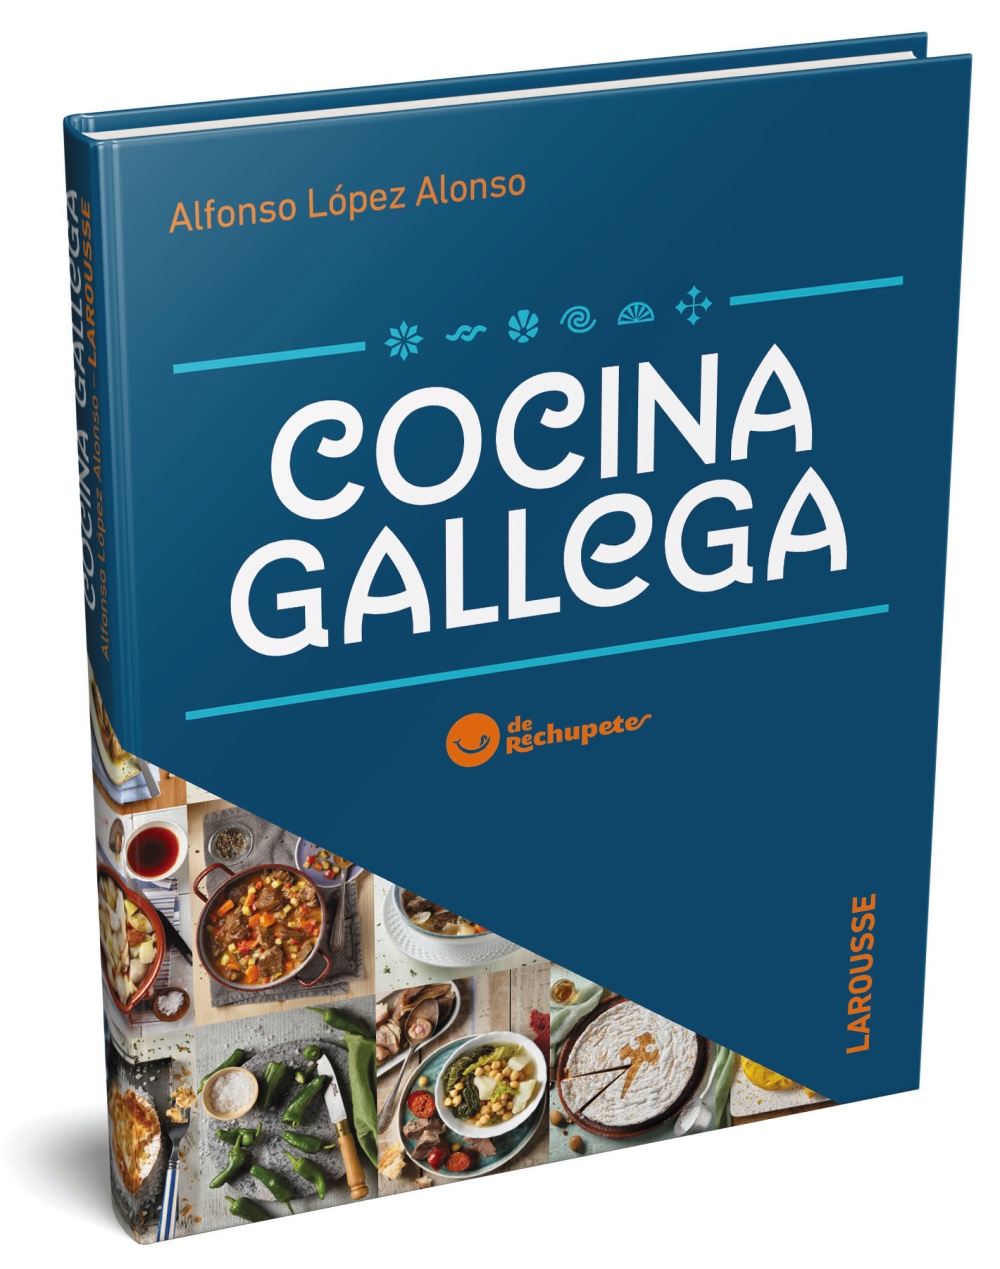 cocina-gallega-de-rechupete-1573821041.jpg